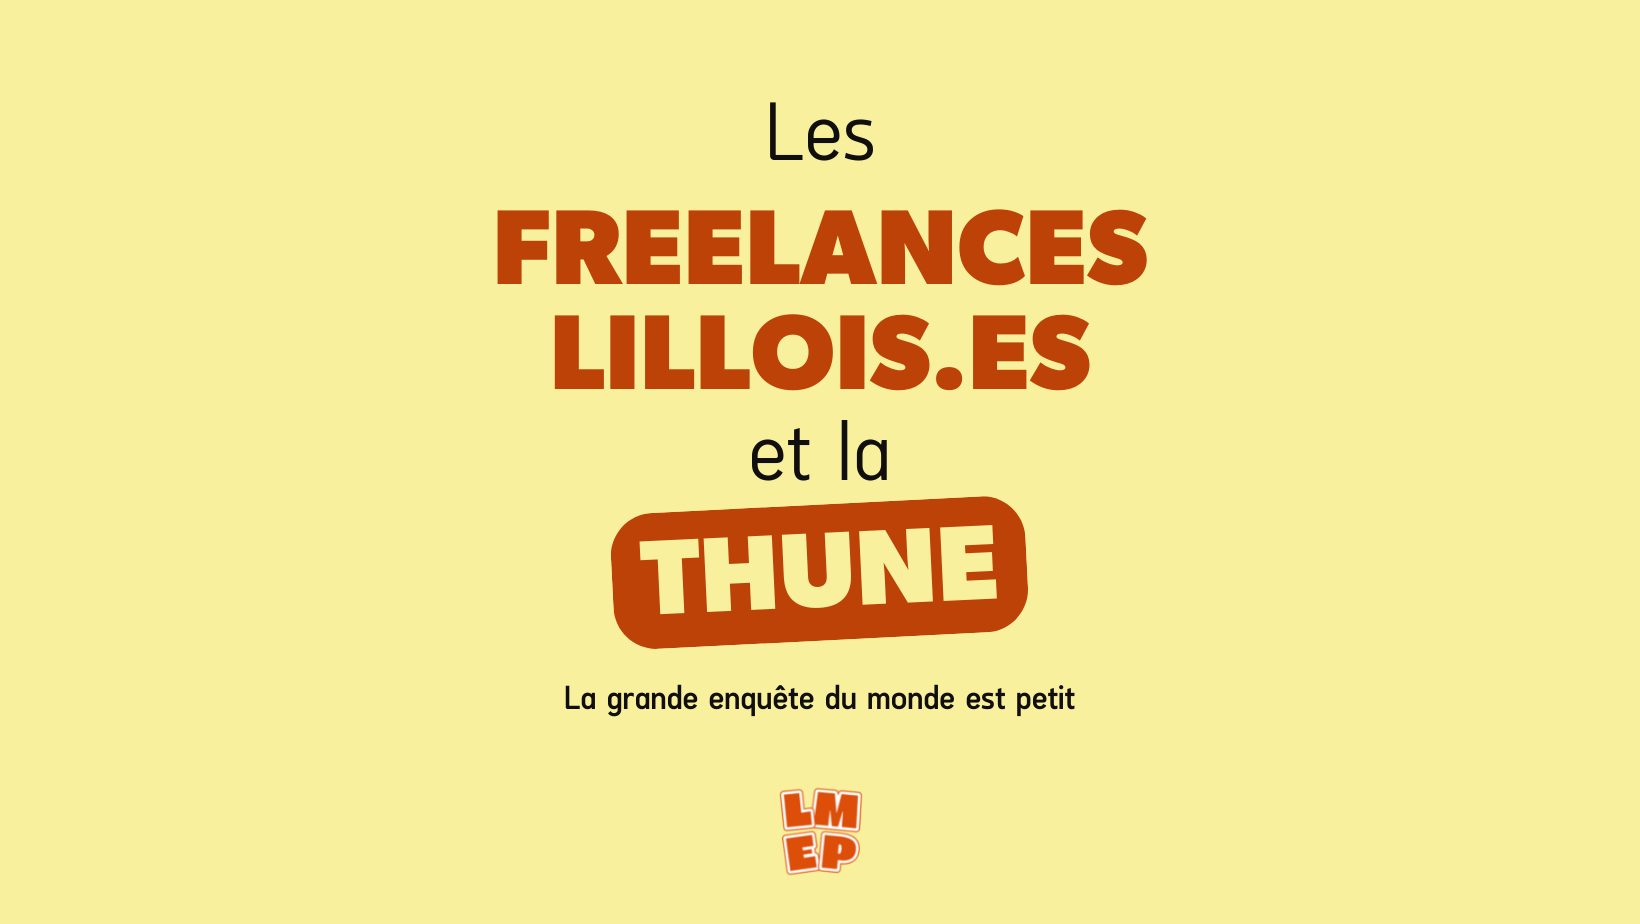 Les freelances lillois.es et la thune ! 💶